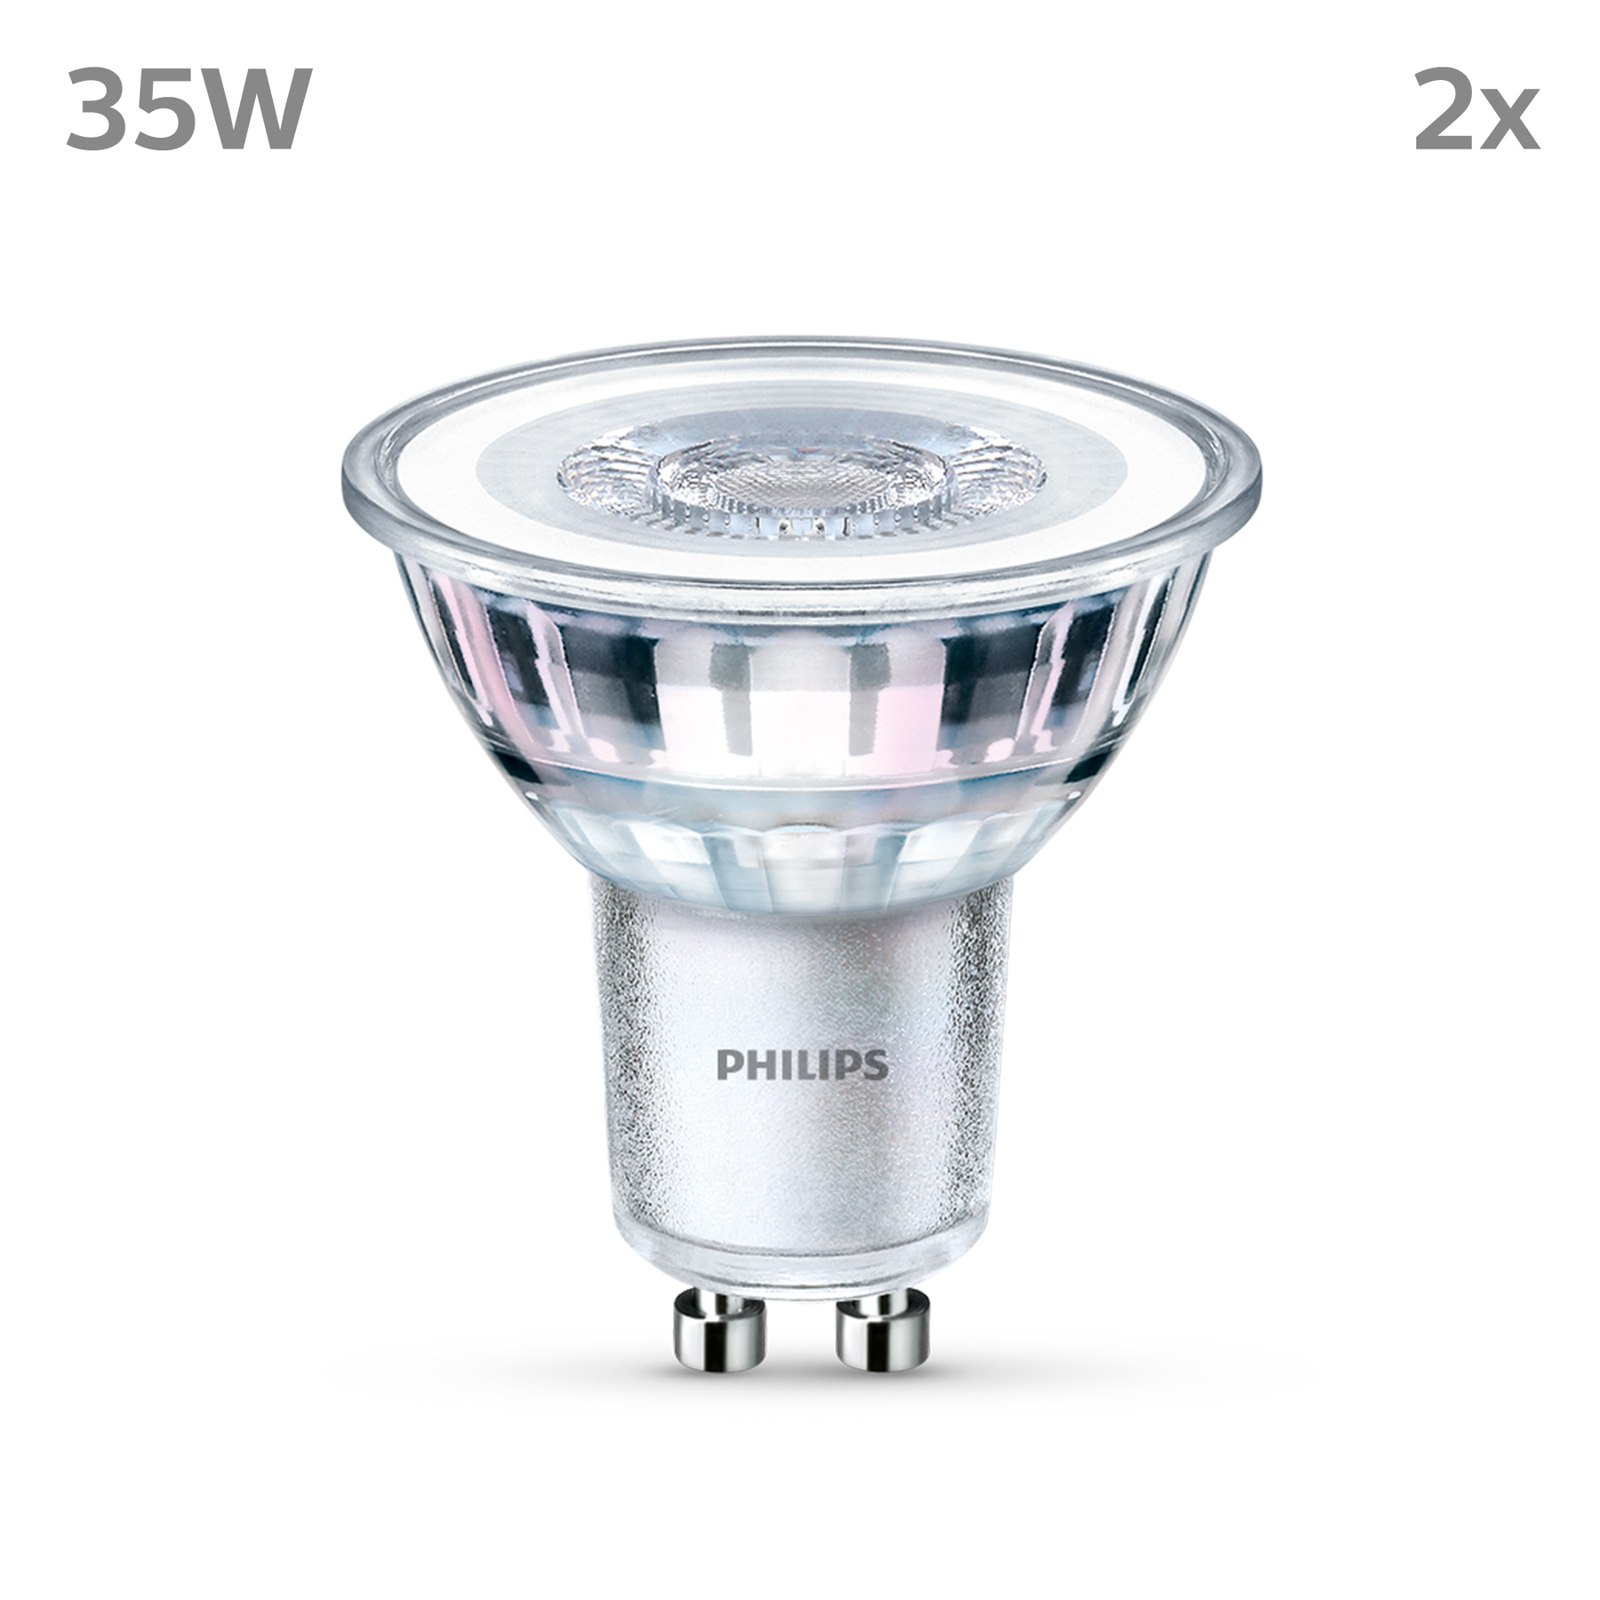 Philips LED-Lampe GU10 3,5W 255lm 827 klar 36° 2er